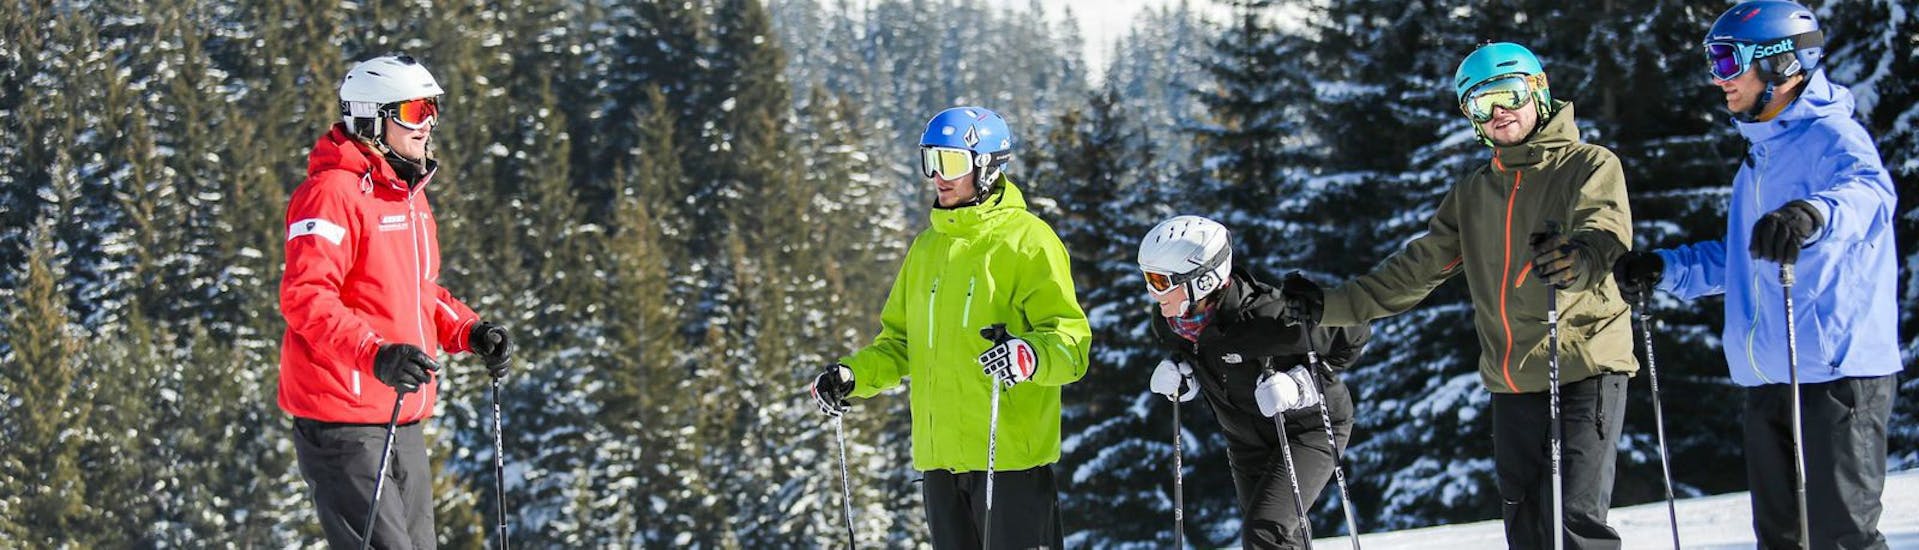 Skileraar legt oefeningen uit aan de klas tijdens de skilessen voor volwassenen voor beginners - weekend met Skischool Nova.